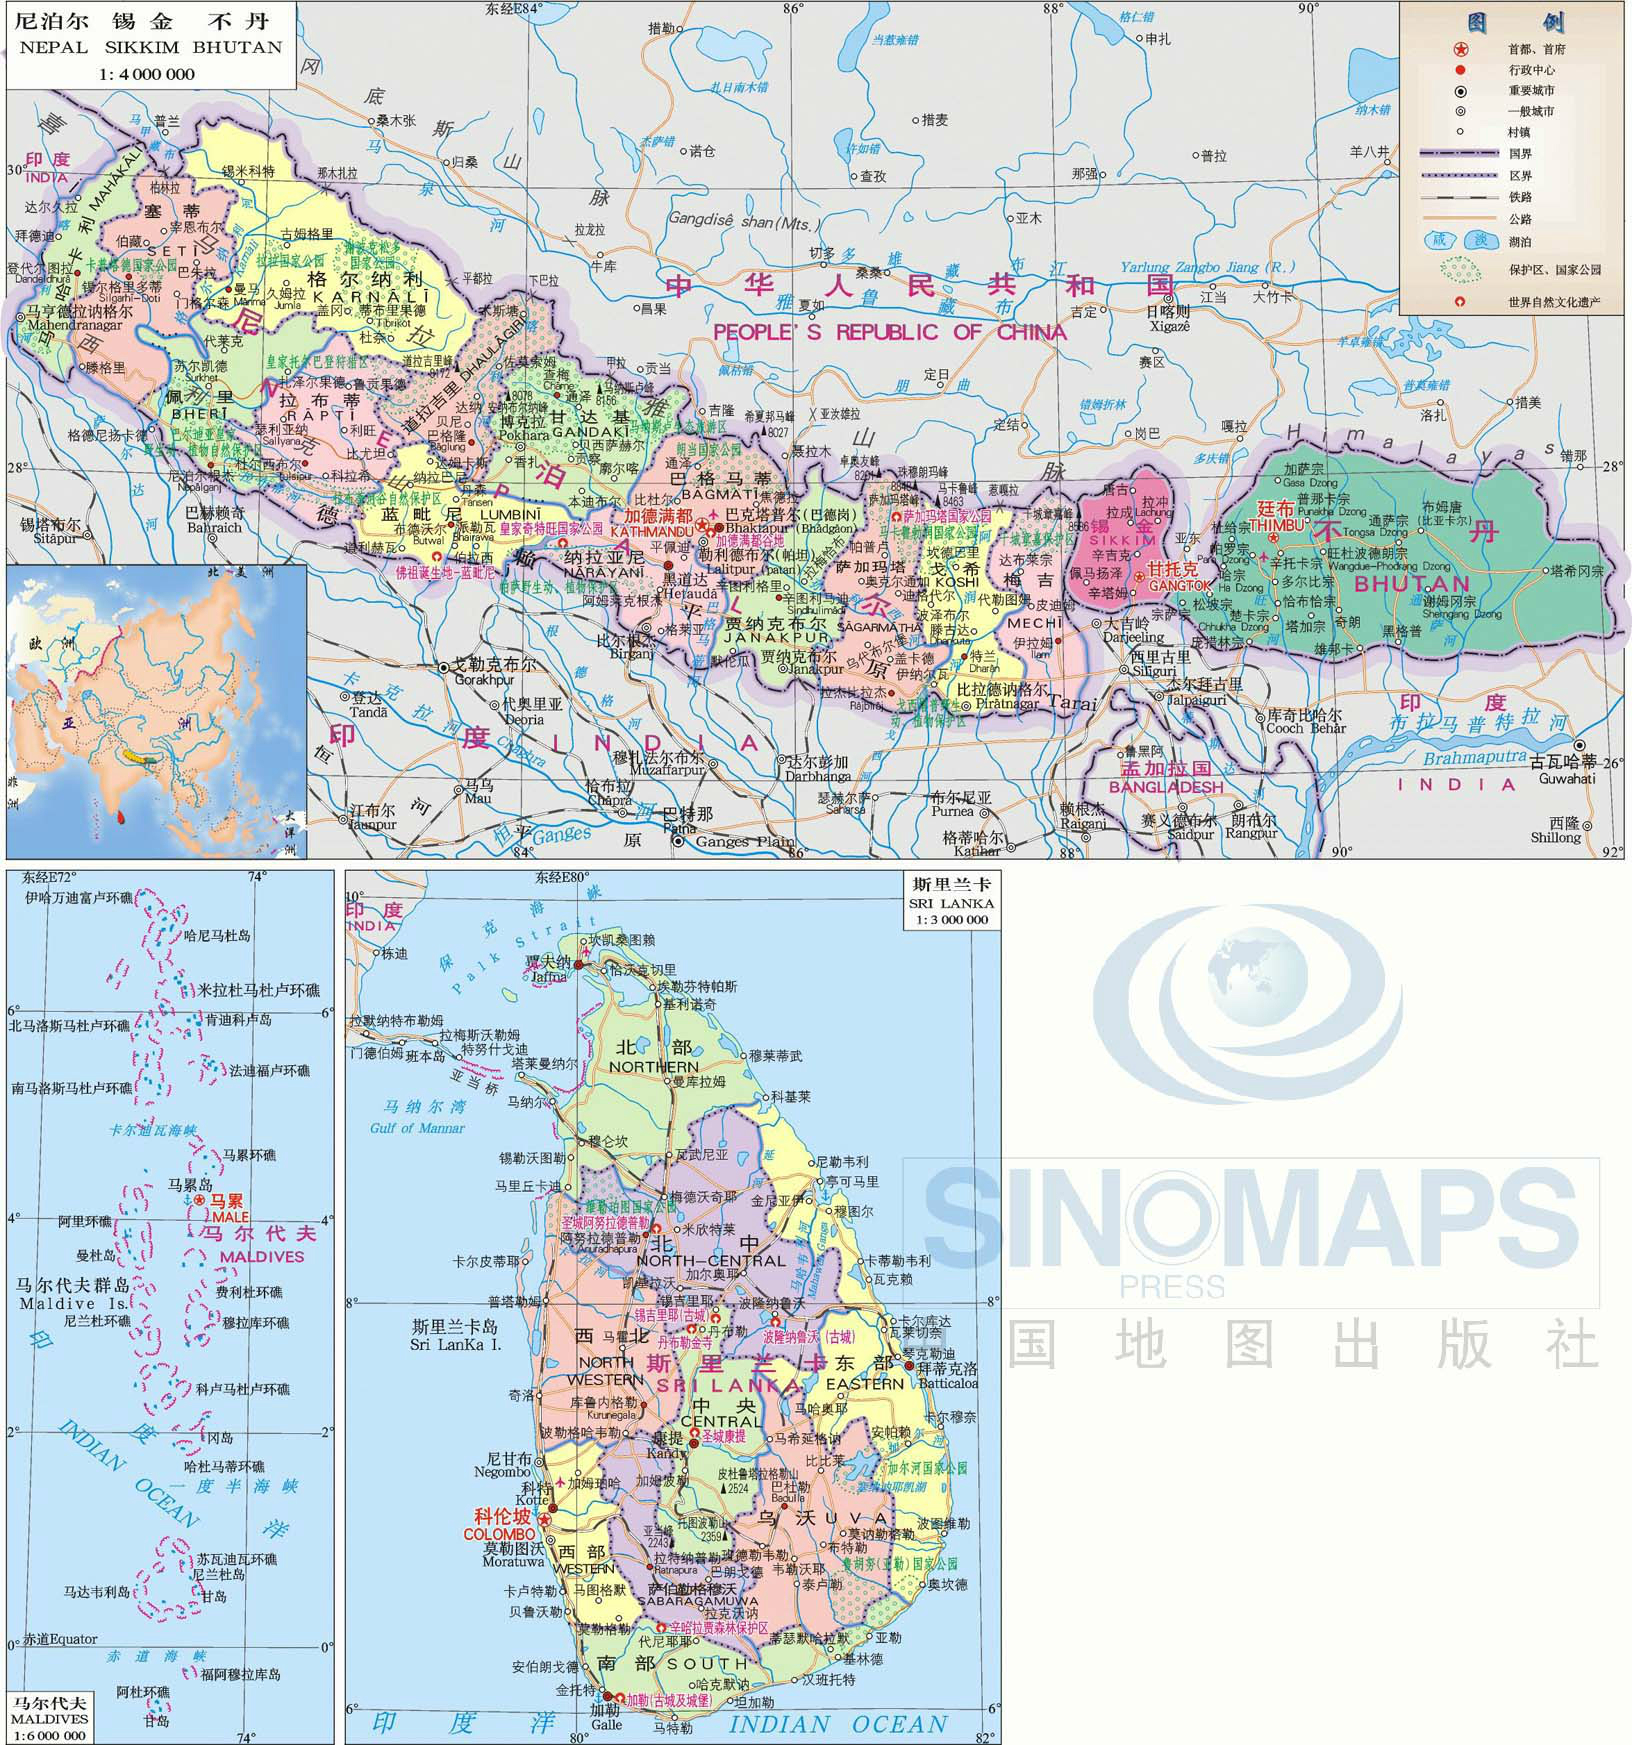 尼泊尔地图——from sinomaps press